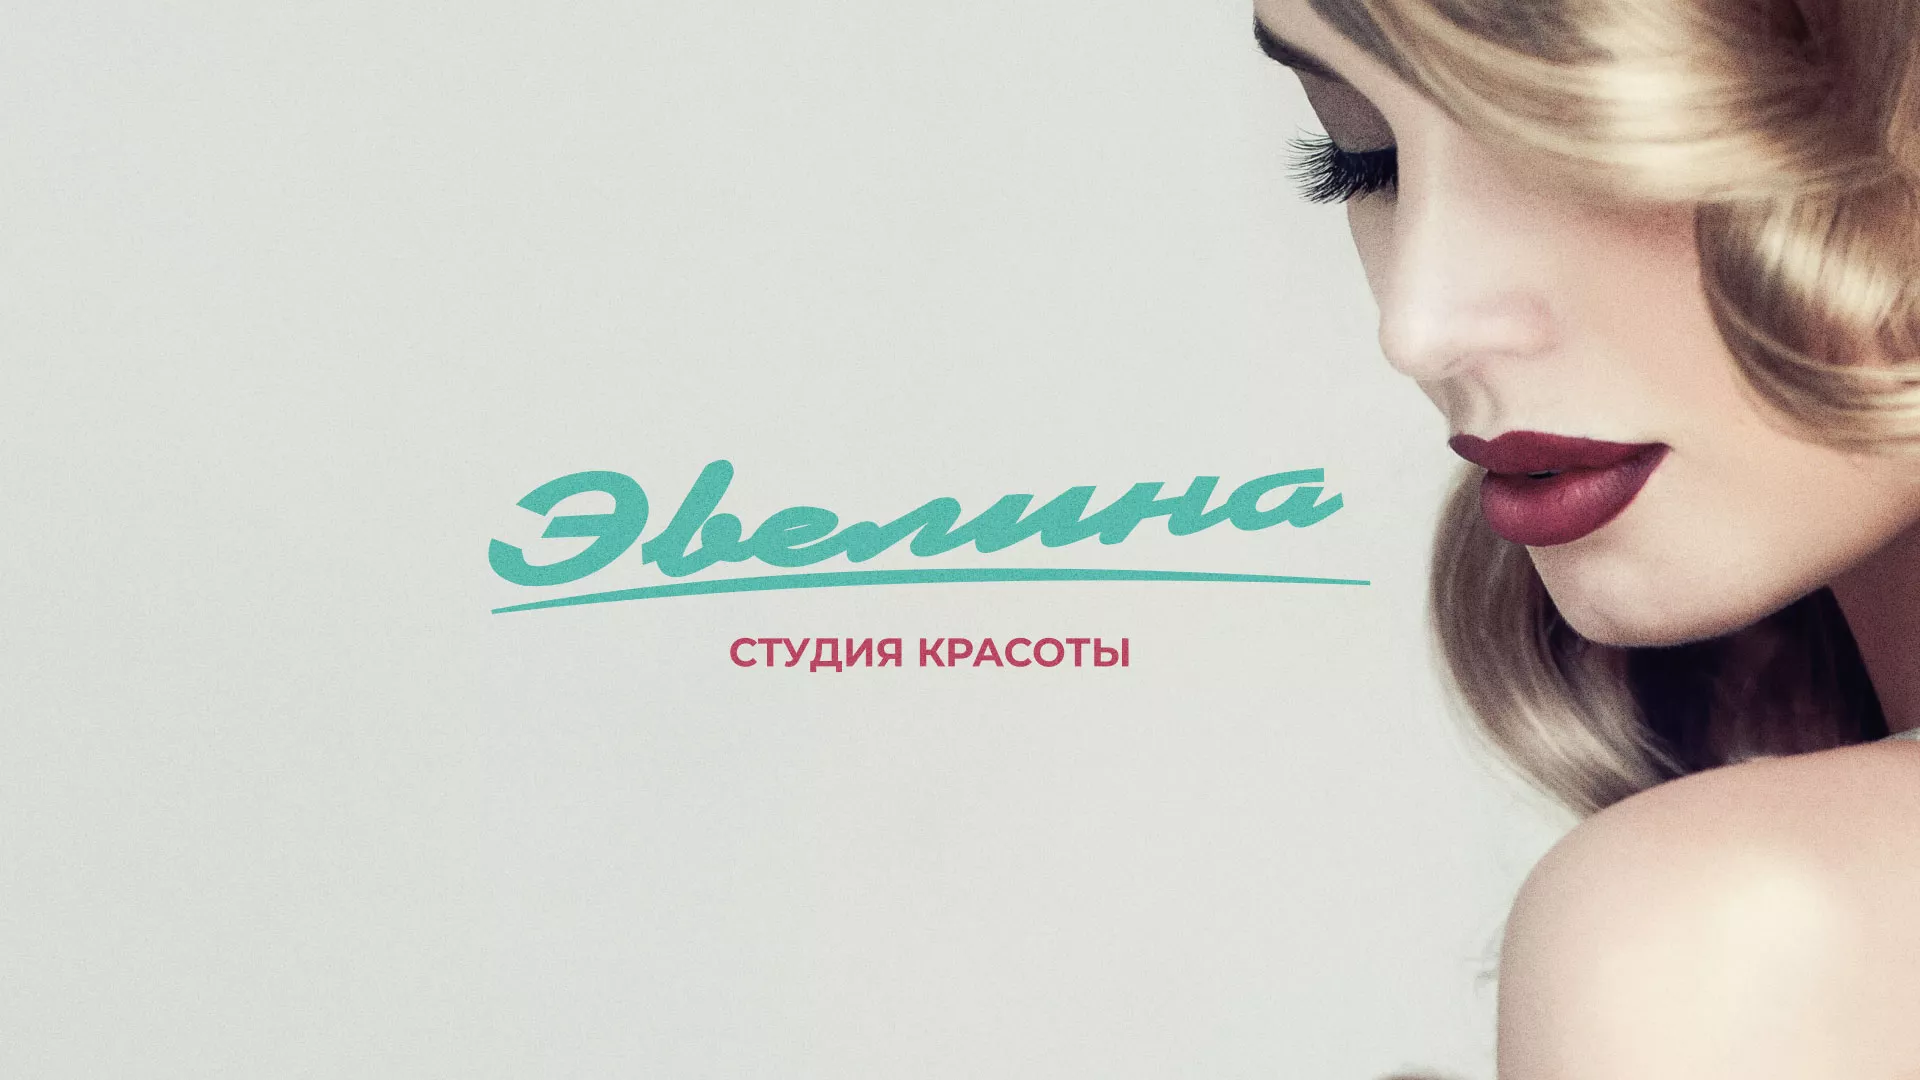 Разработка сайта для салона красоты «Эвелина» в Усолье-Сибирском